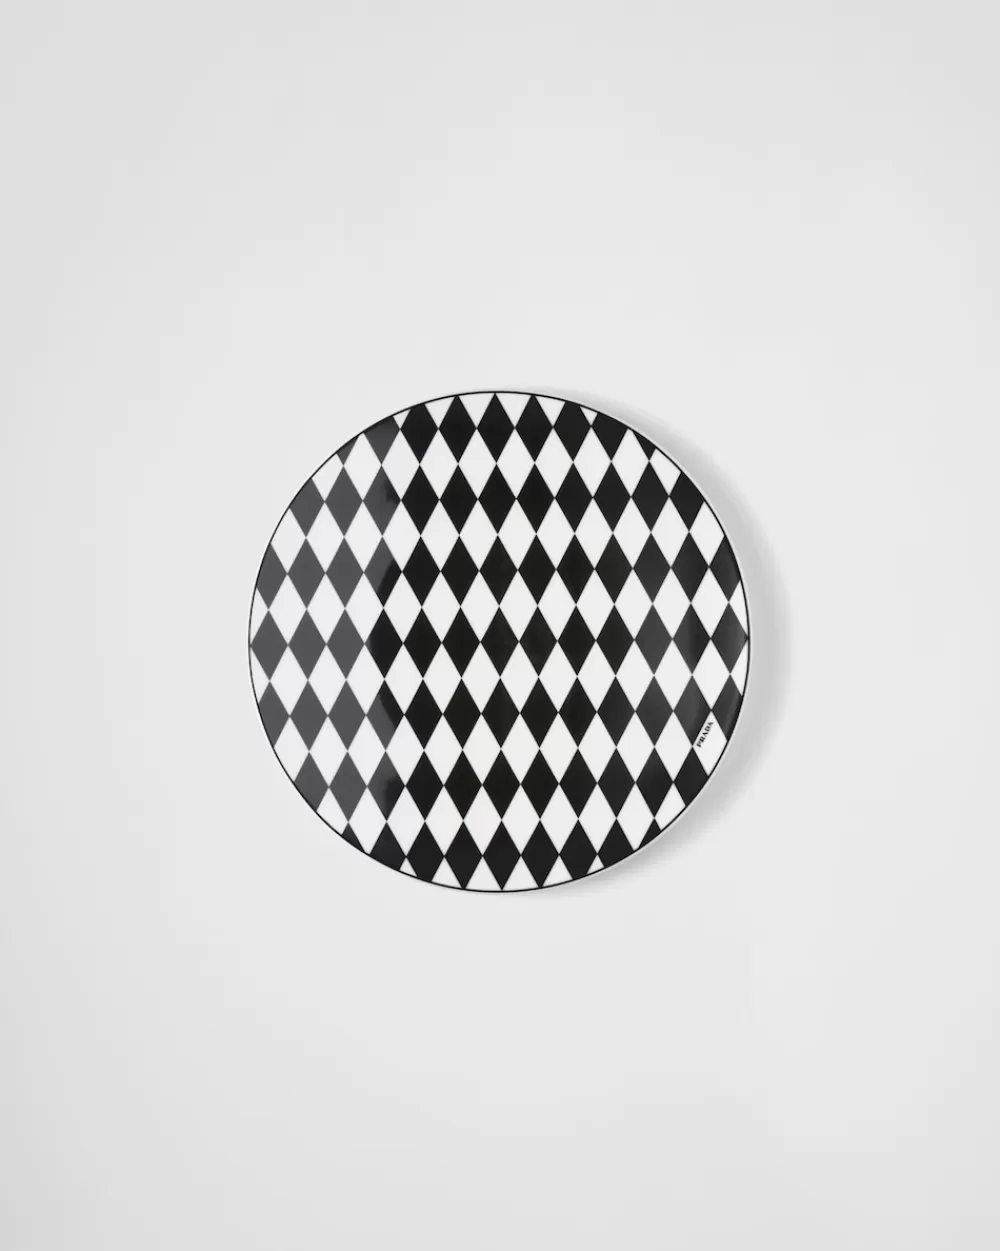 Prada Sottopiatto In Porcellana - Checkerboard